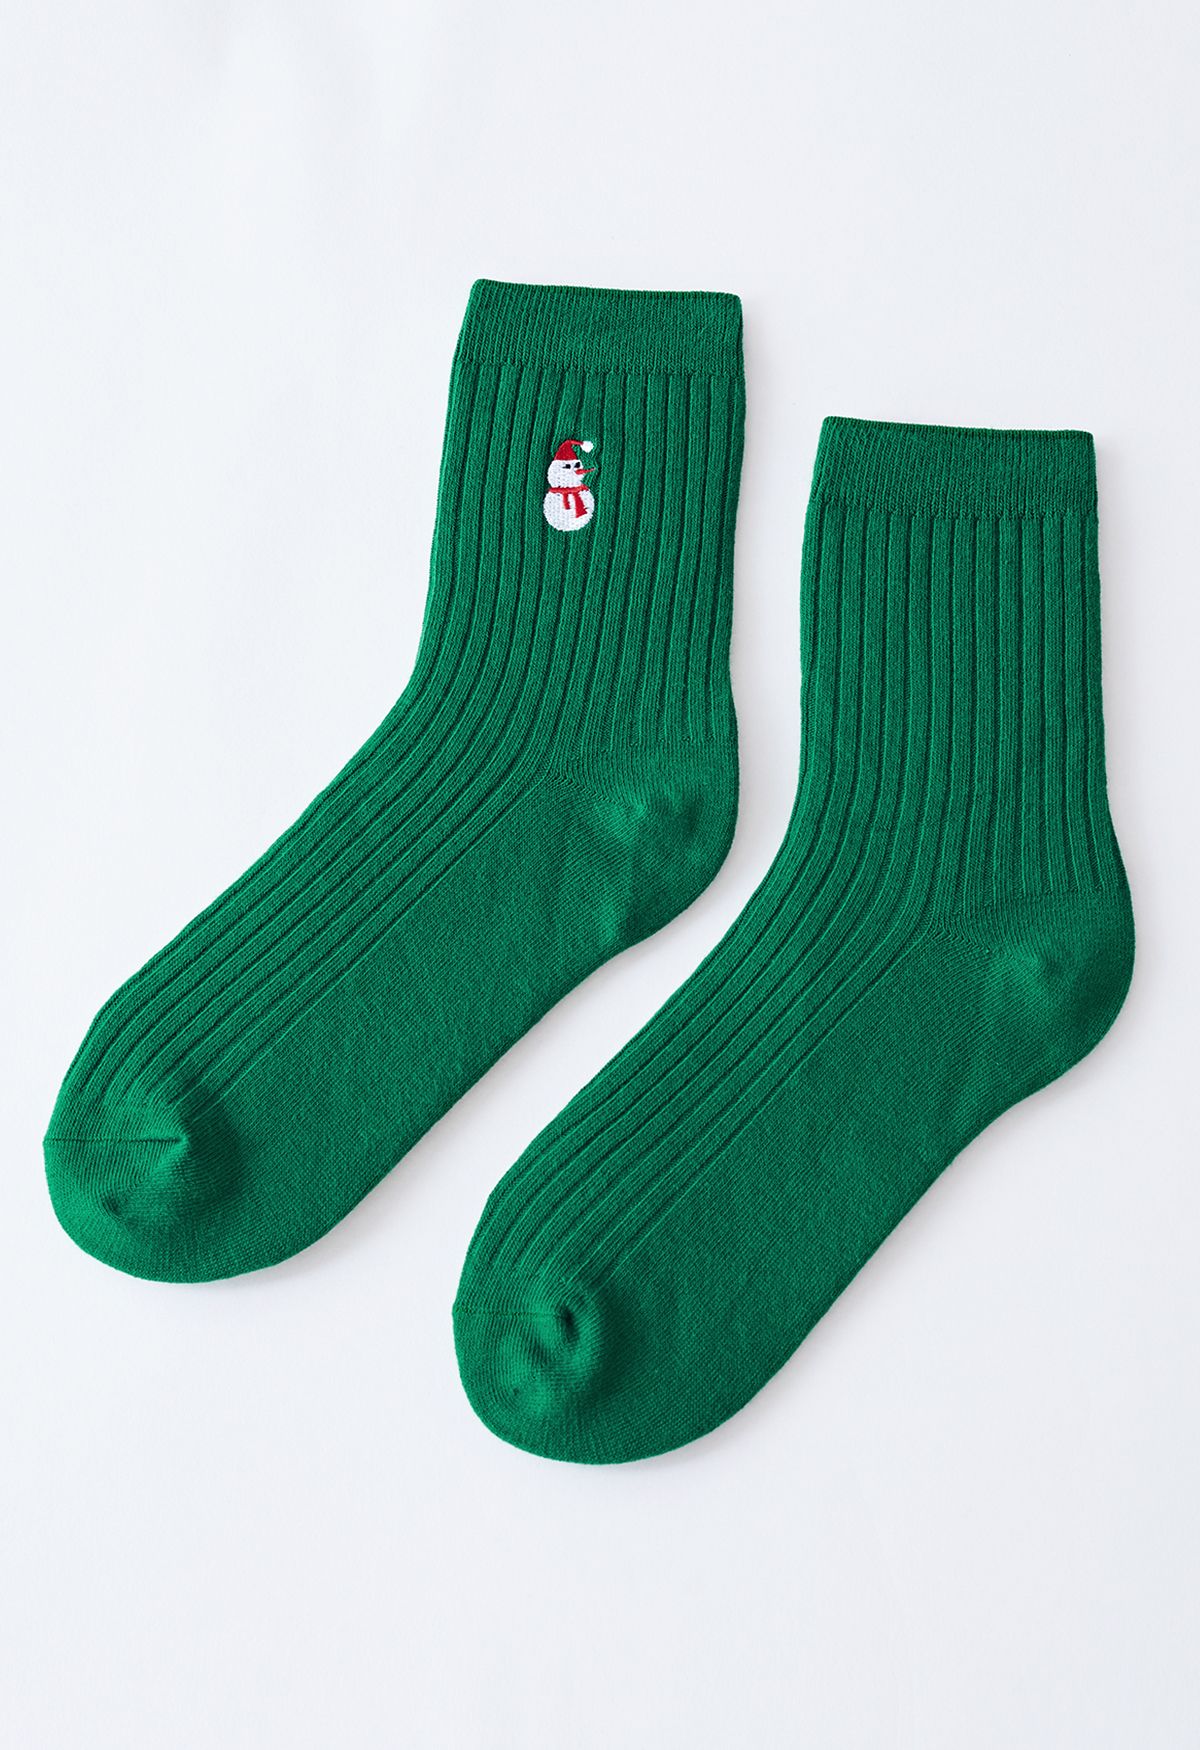 Caja de regalo con calcetines bordados de Papá Noel